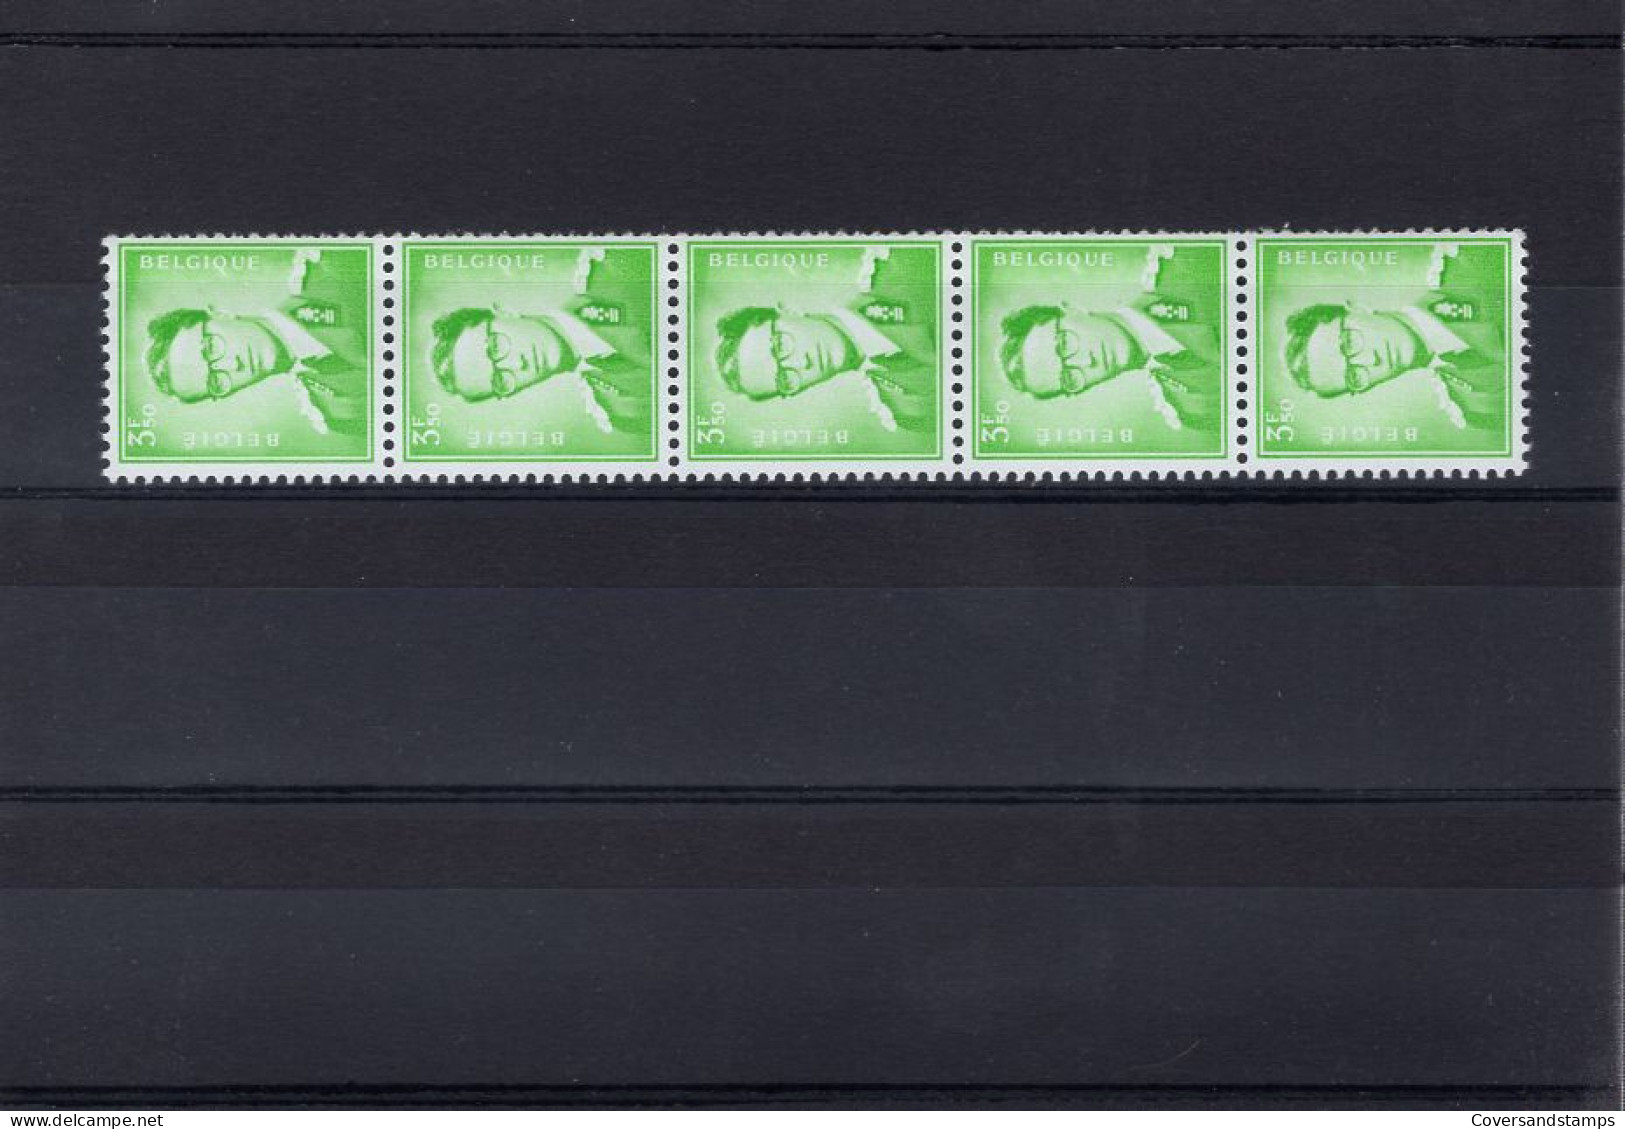  België : R33 MNH ** - Coil Stamps